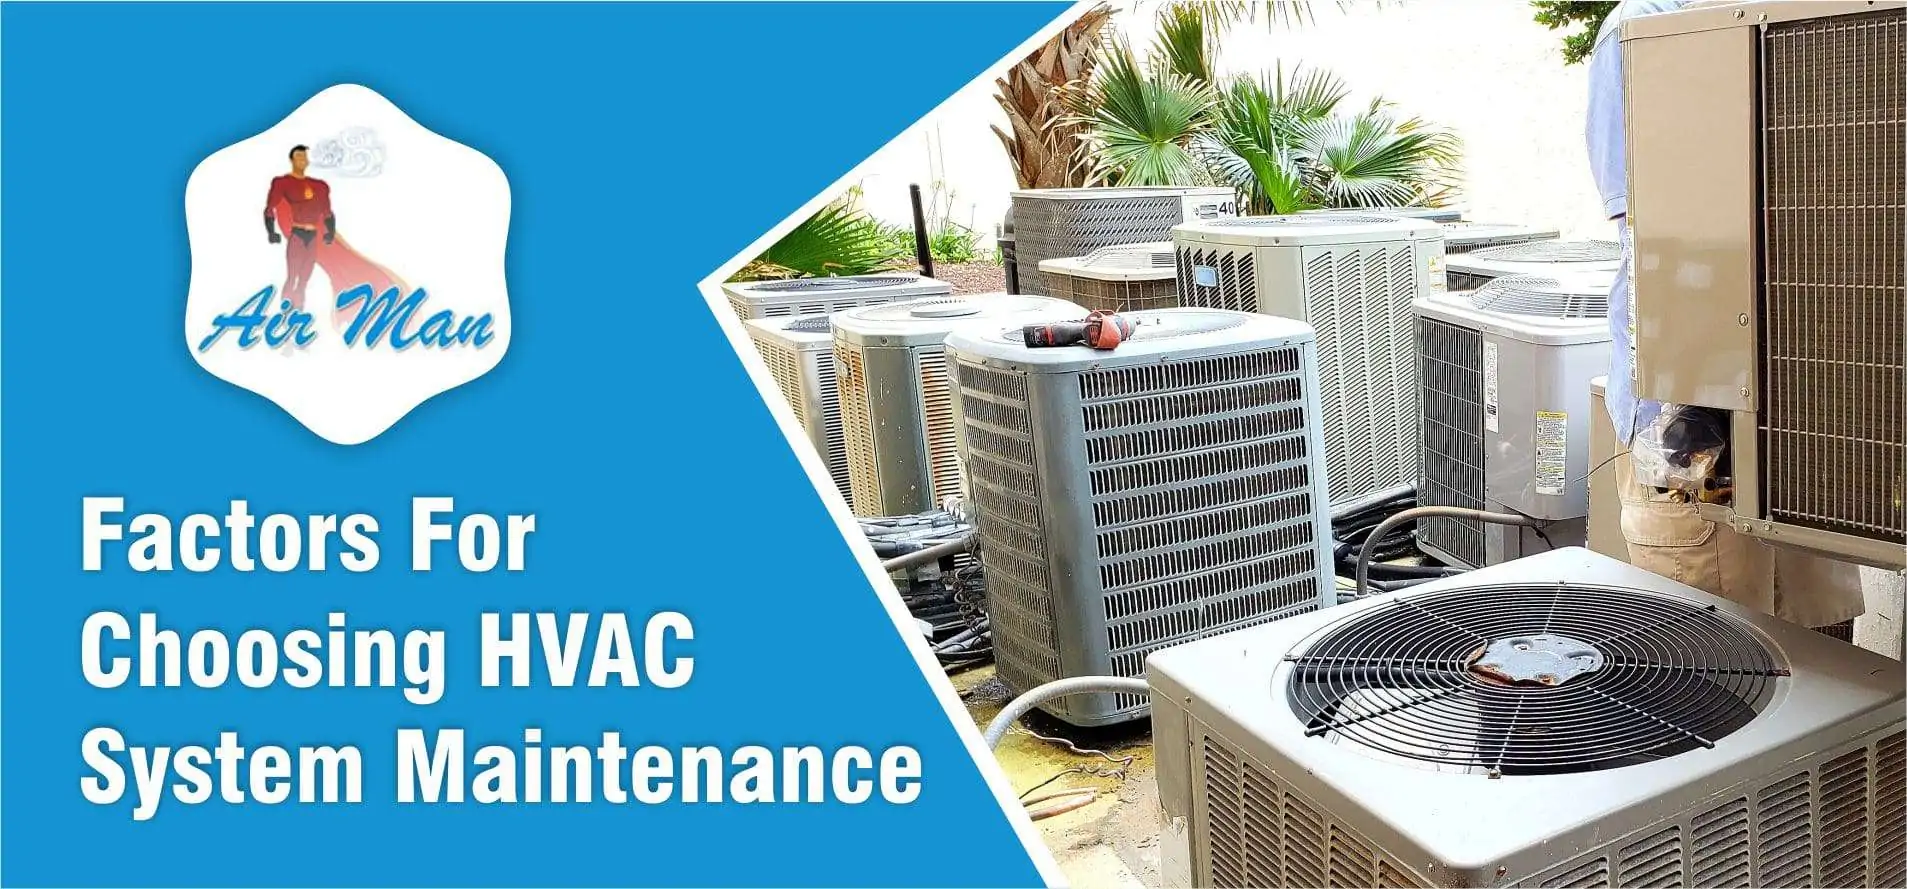 HVAC system maintenance